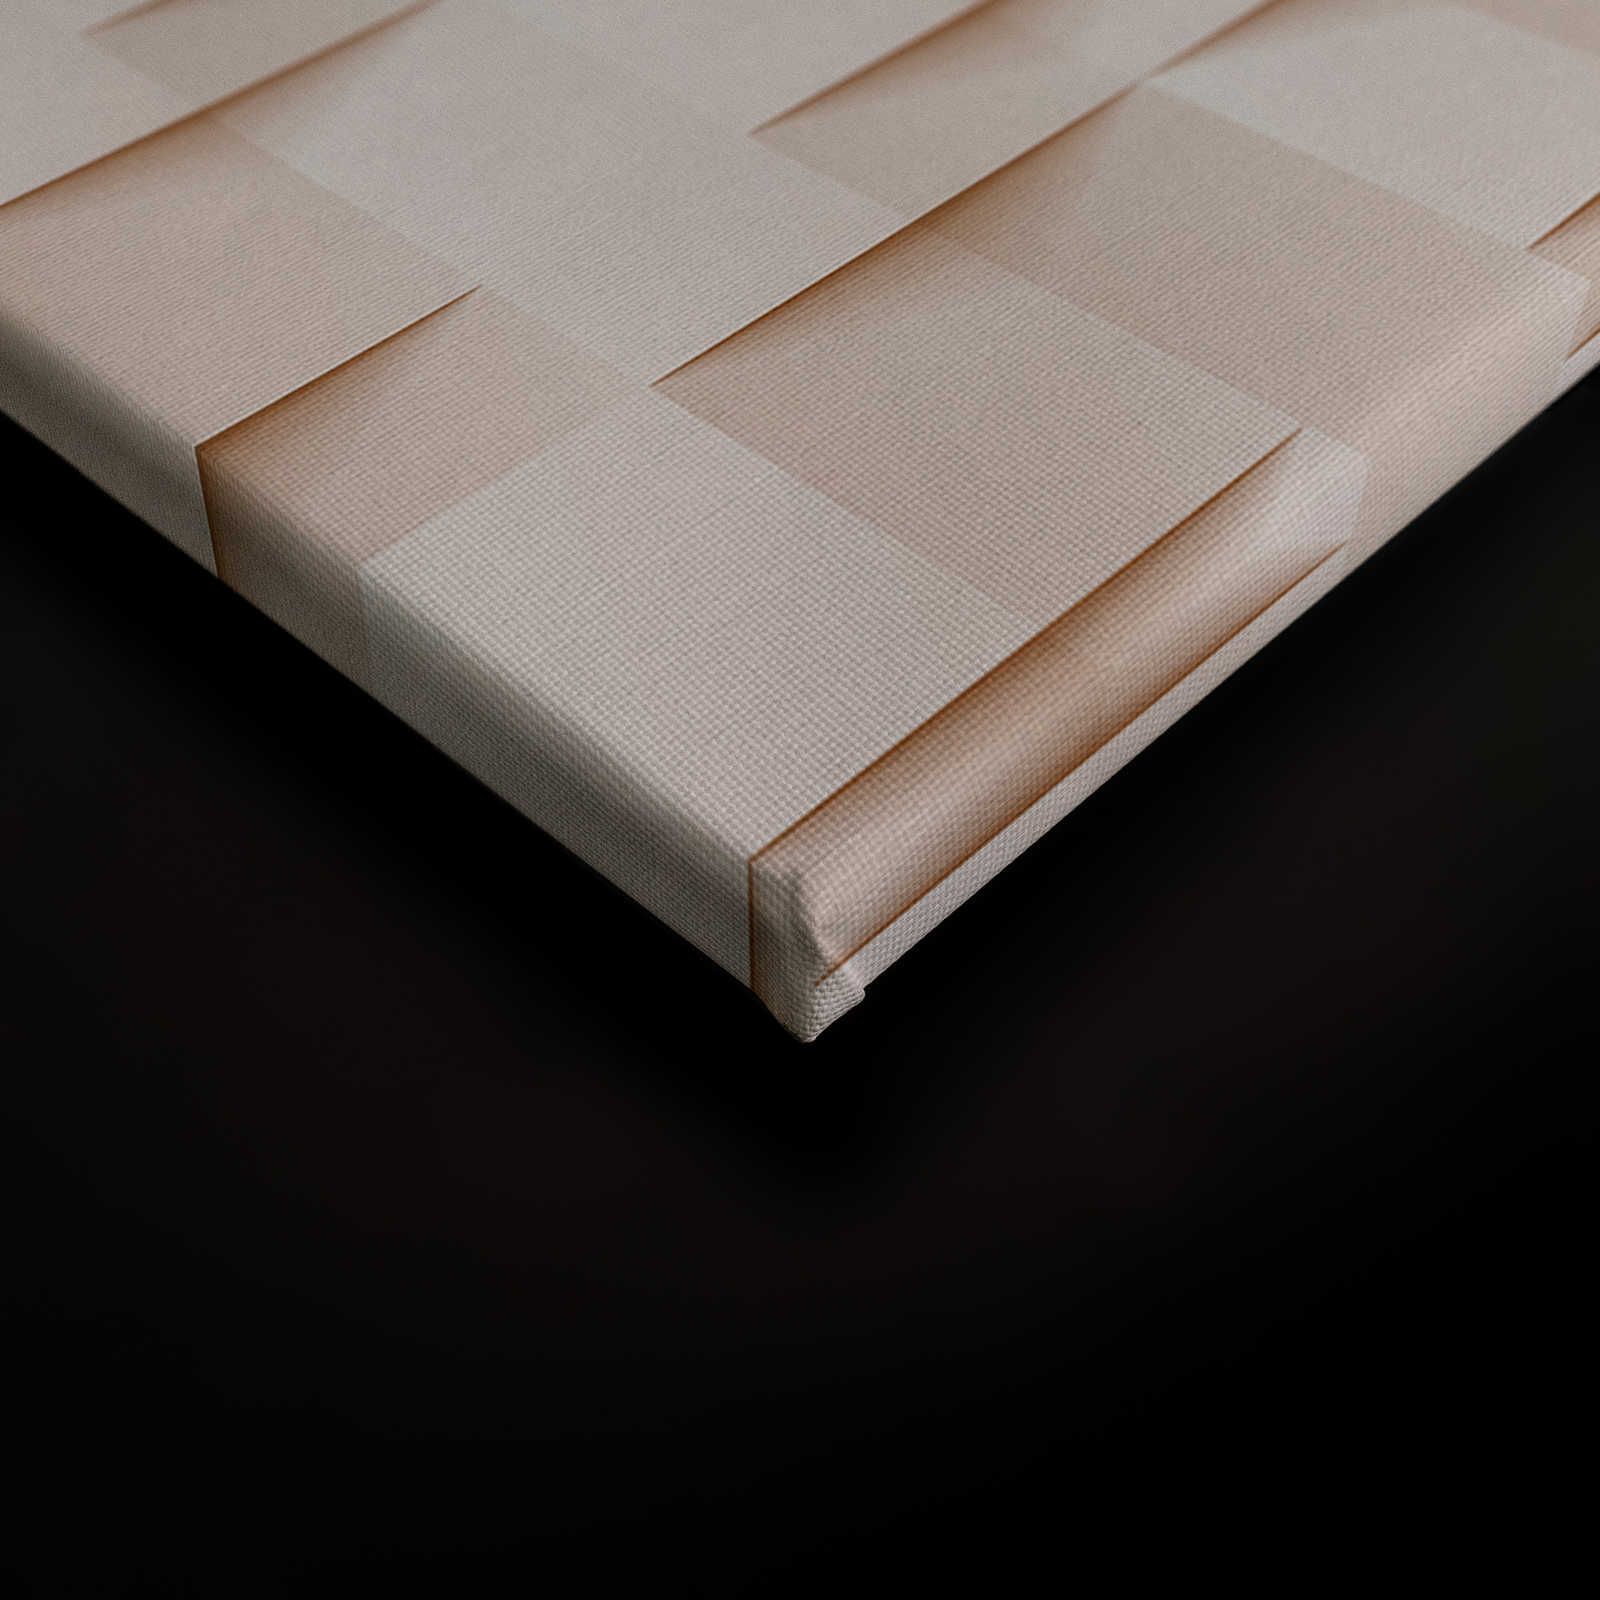             Casa di carta 1 - Pittura su tela 3D struttura di carta origami pieghevole - 0,90 m x 0,60 m
        